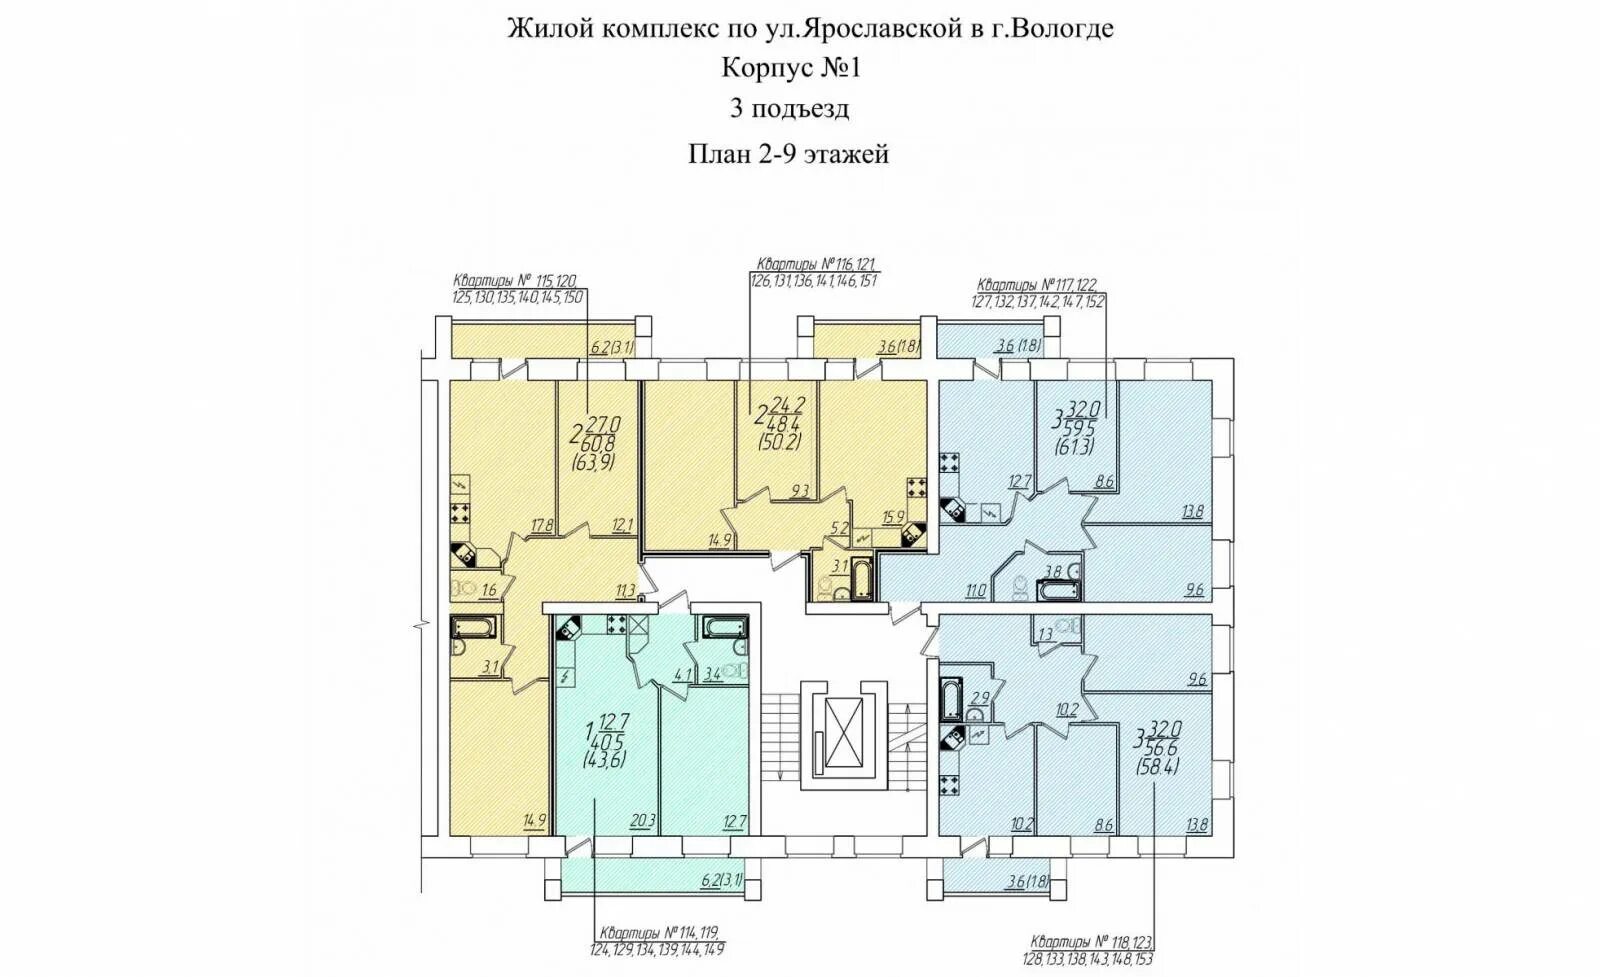 4 Квартиры на этаже планировка. Схема подъезда жилого дома. План номеров квартир на этаже. 3 Квартиры на этаже планировка.